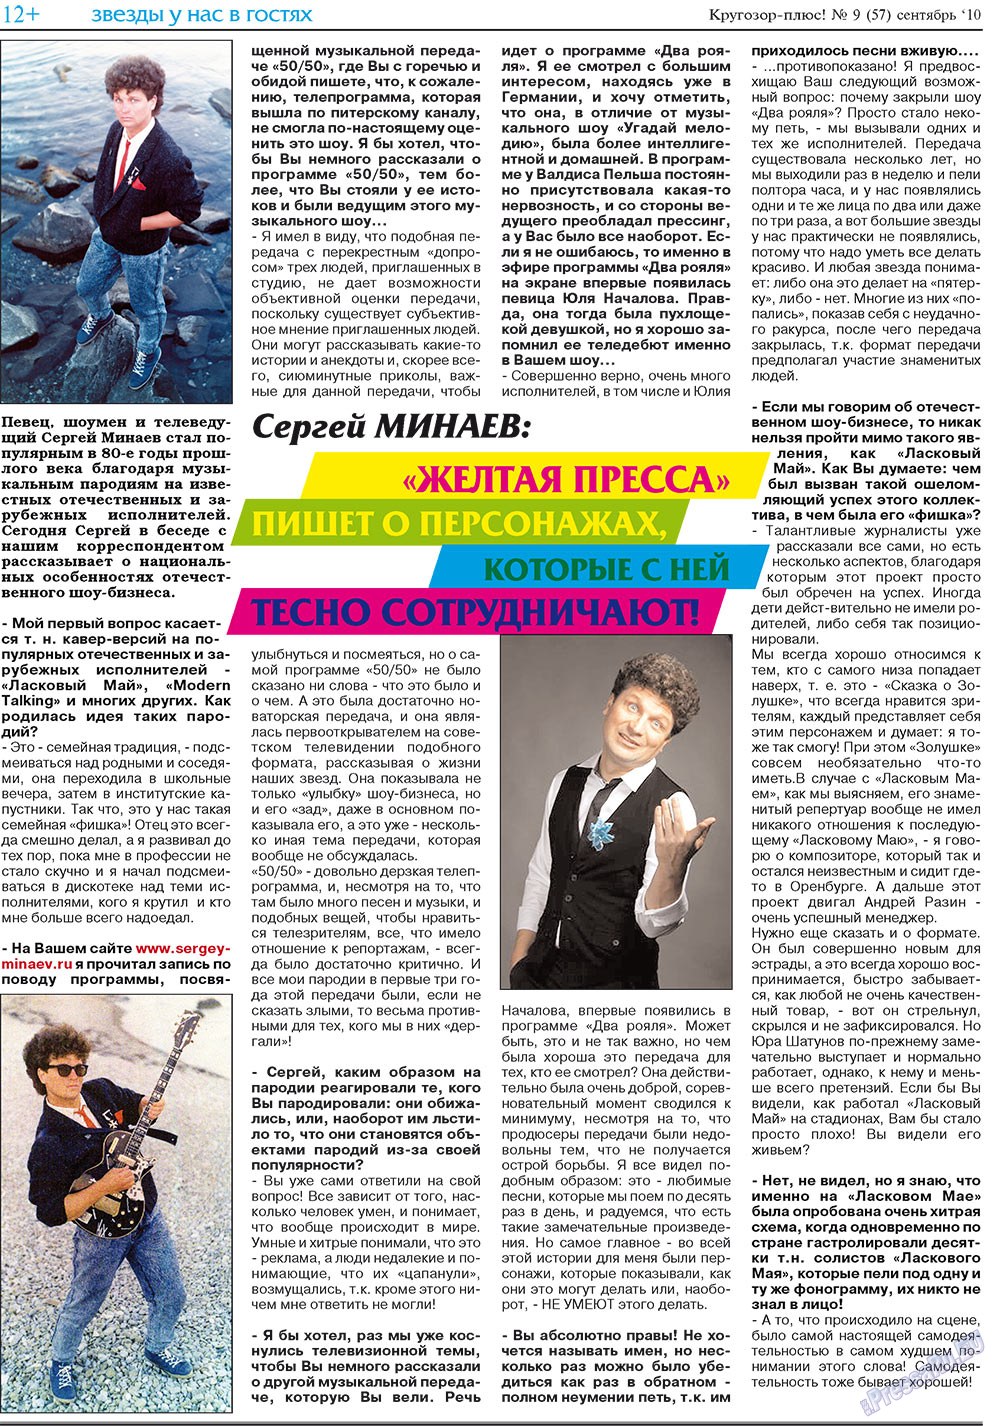 Кругозор плюс!, газета. 2010 №9 стр.28